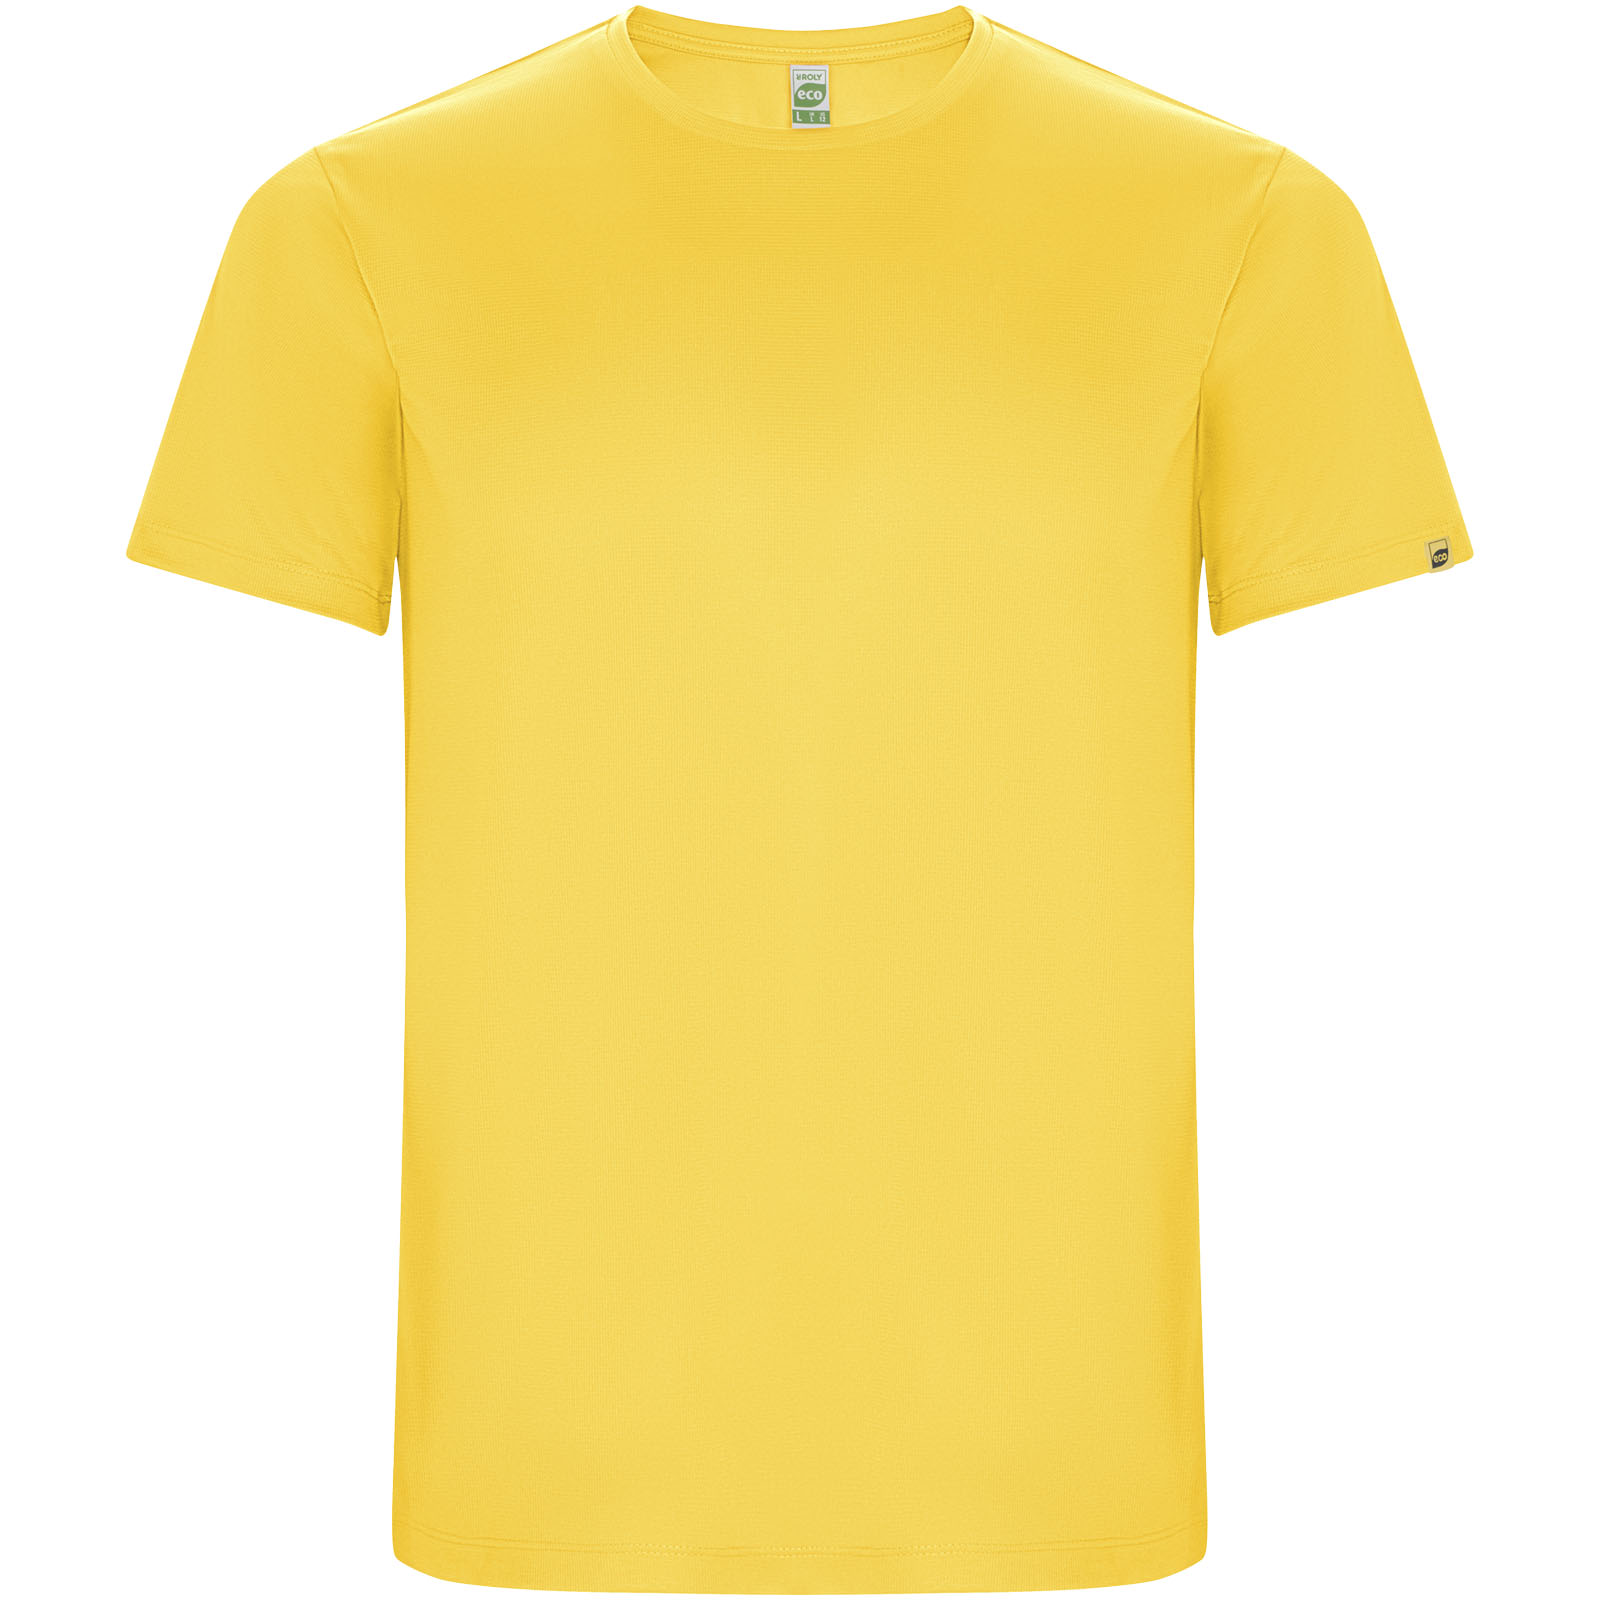 Clothing - Imola short sleeve kids sports t-shirt